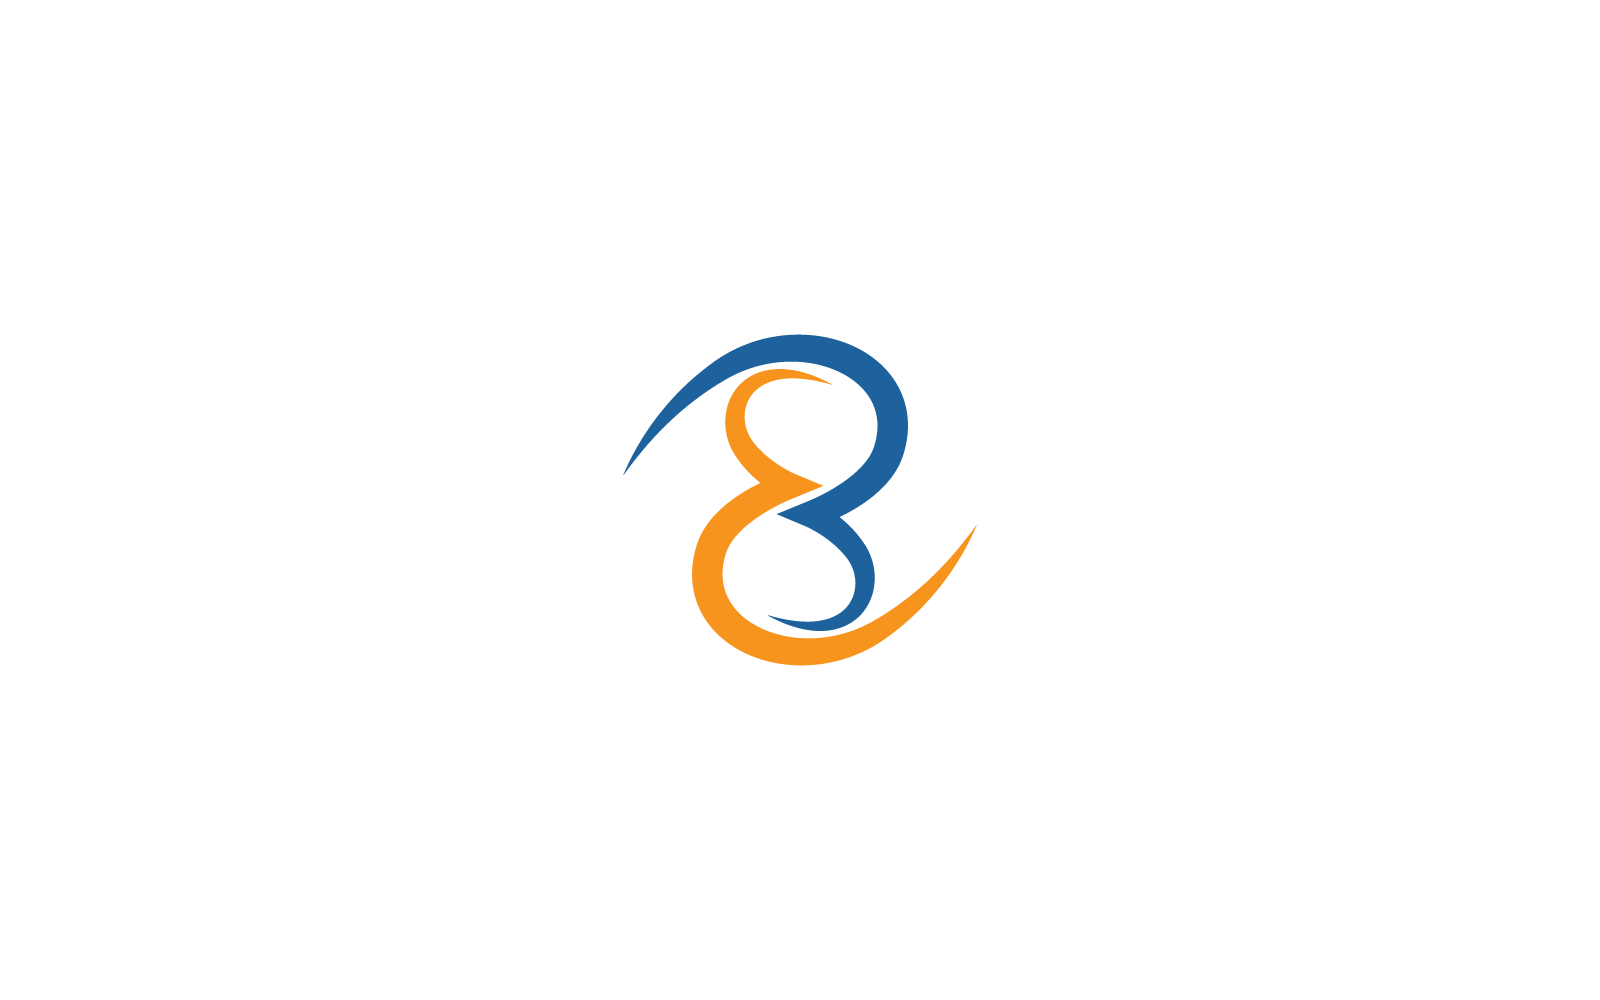 Eight logo vector flat design template